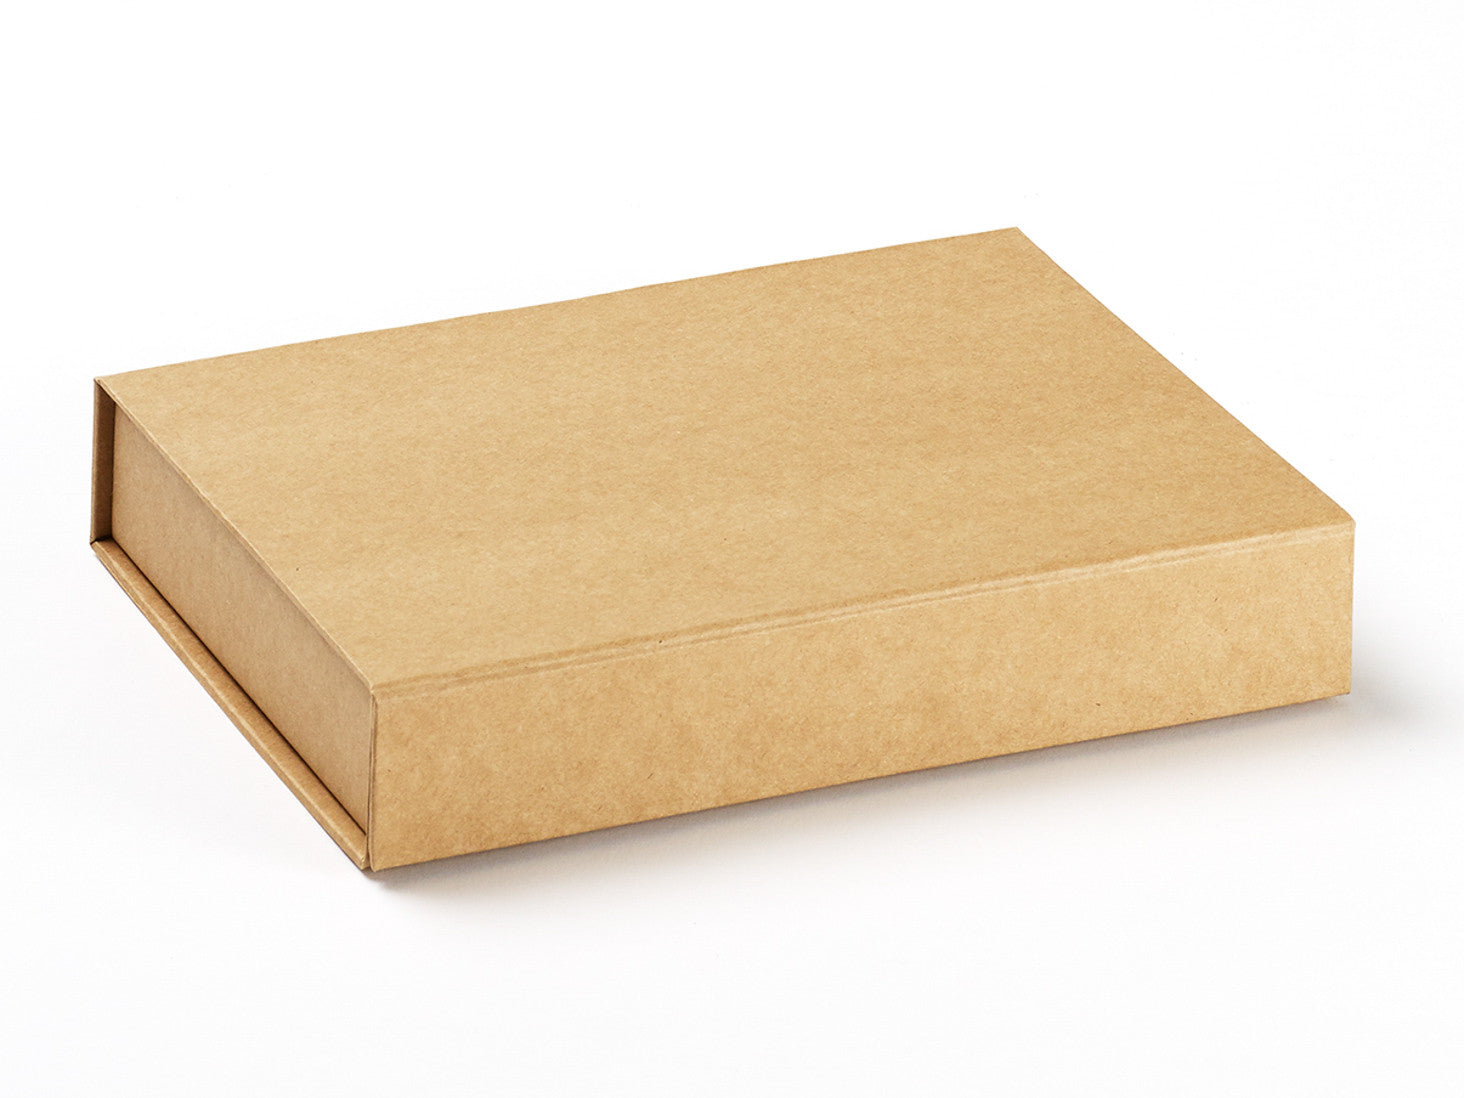 A4 Shallow Natural Kraft Folding Gift Box from Foldabox USA